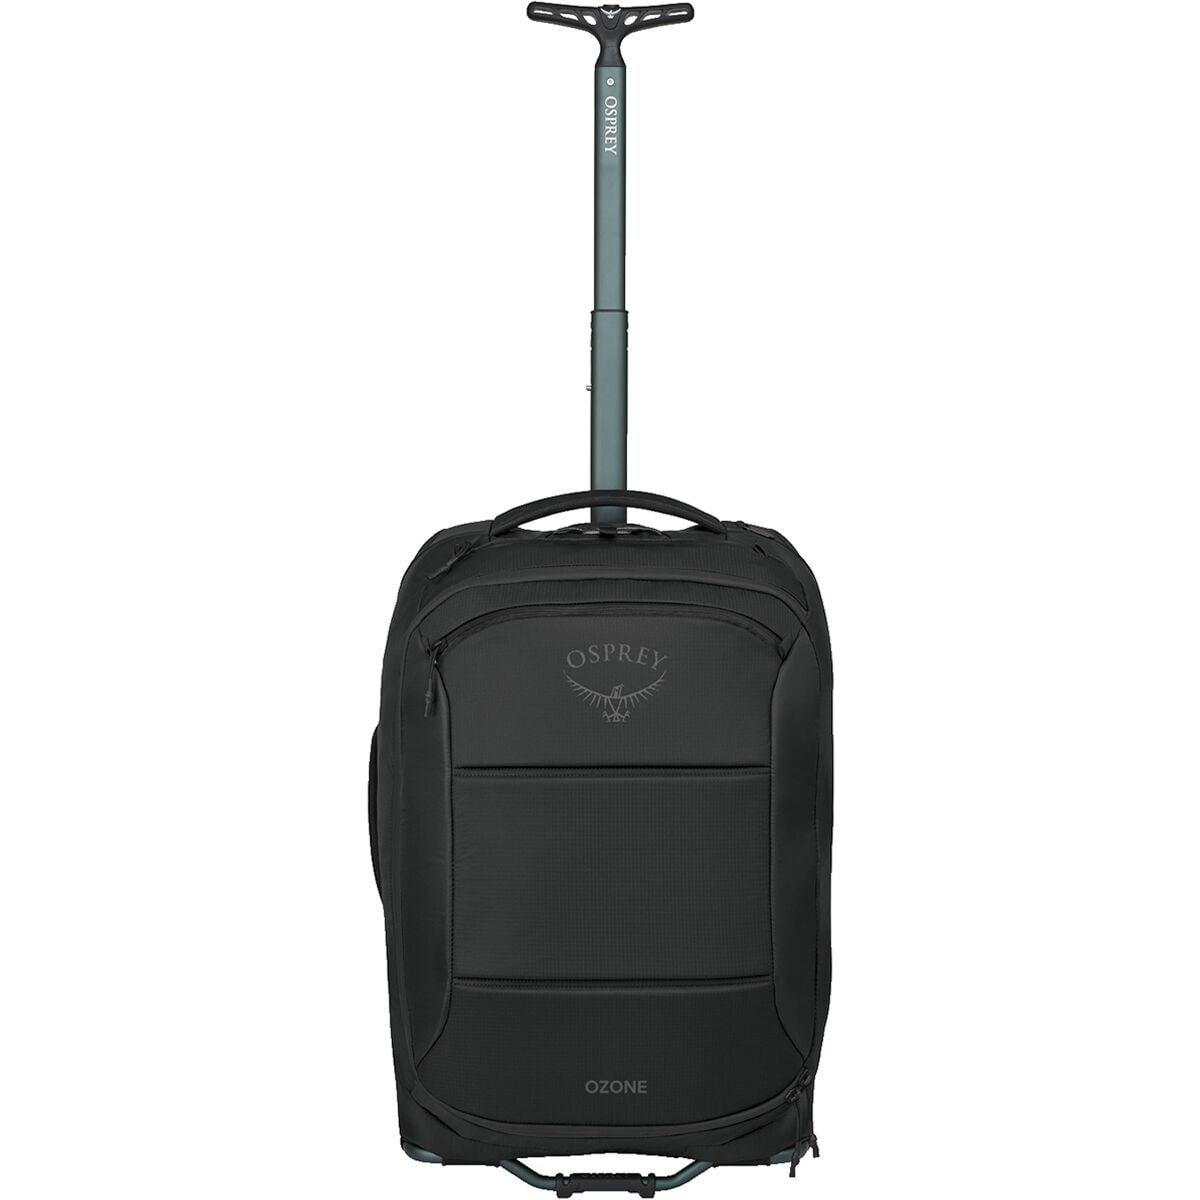 Osprey Packs Ozone 2-Wheel Carry-On Luggage